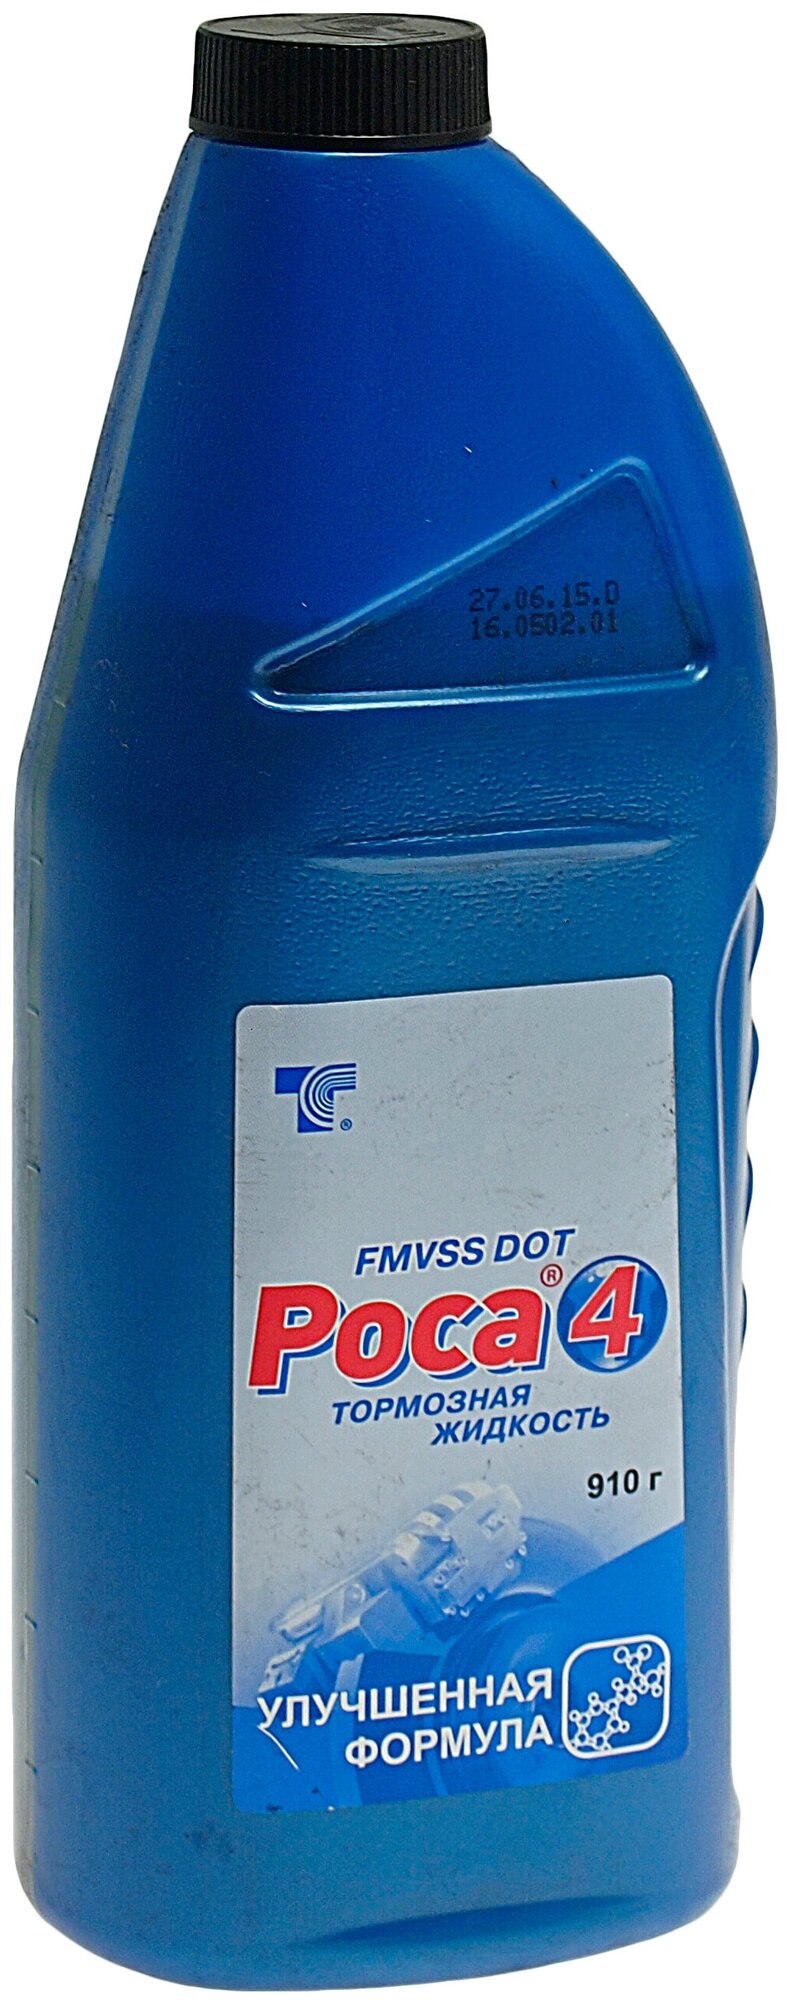 Жидкость тормозная Роса 4 (Упаковка: 910г)